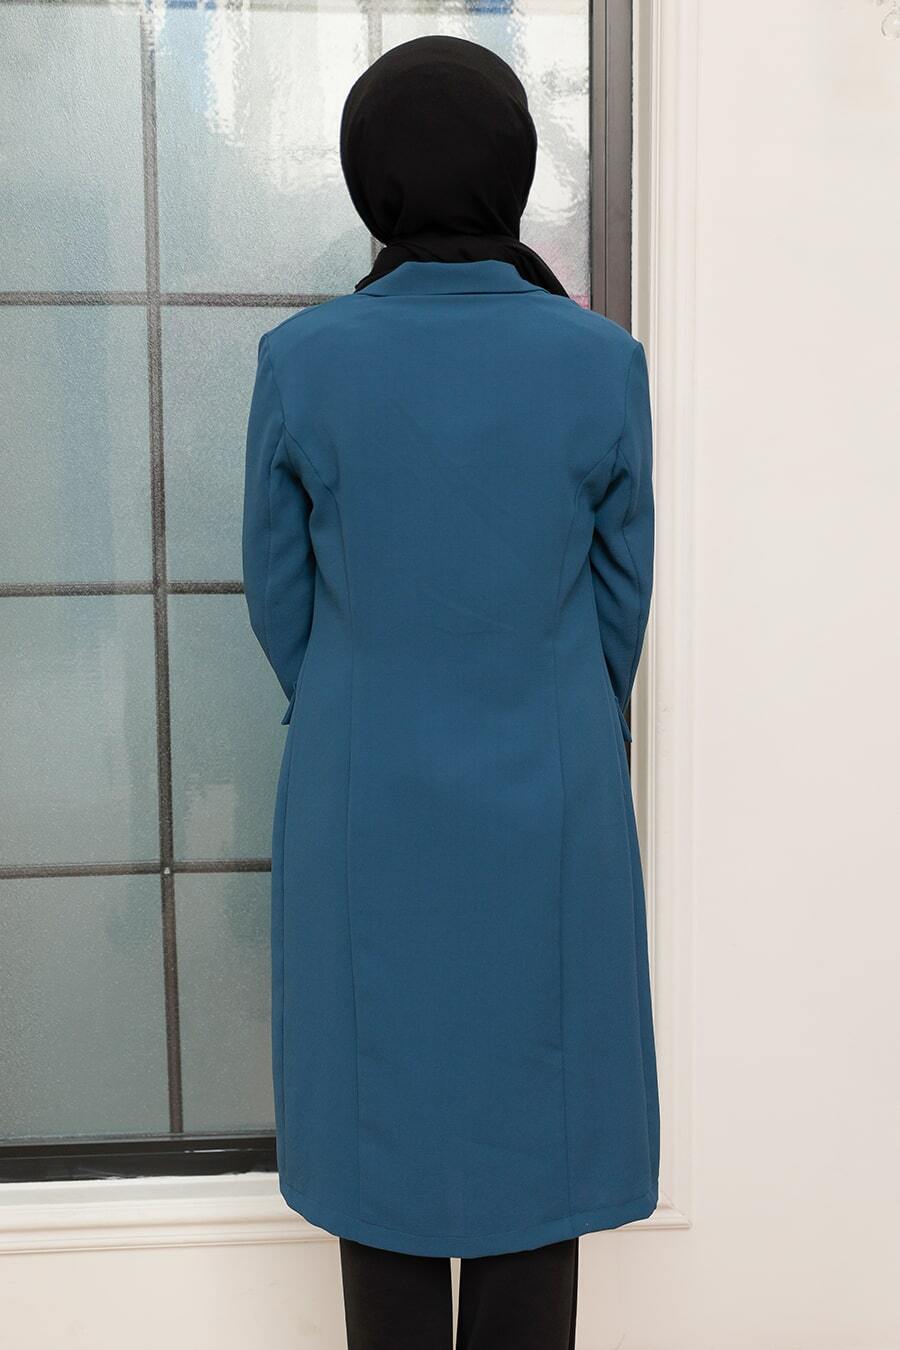 Neva Style - İndigo Mavisi Tesettür Blazer Ceket 56950IM